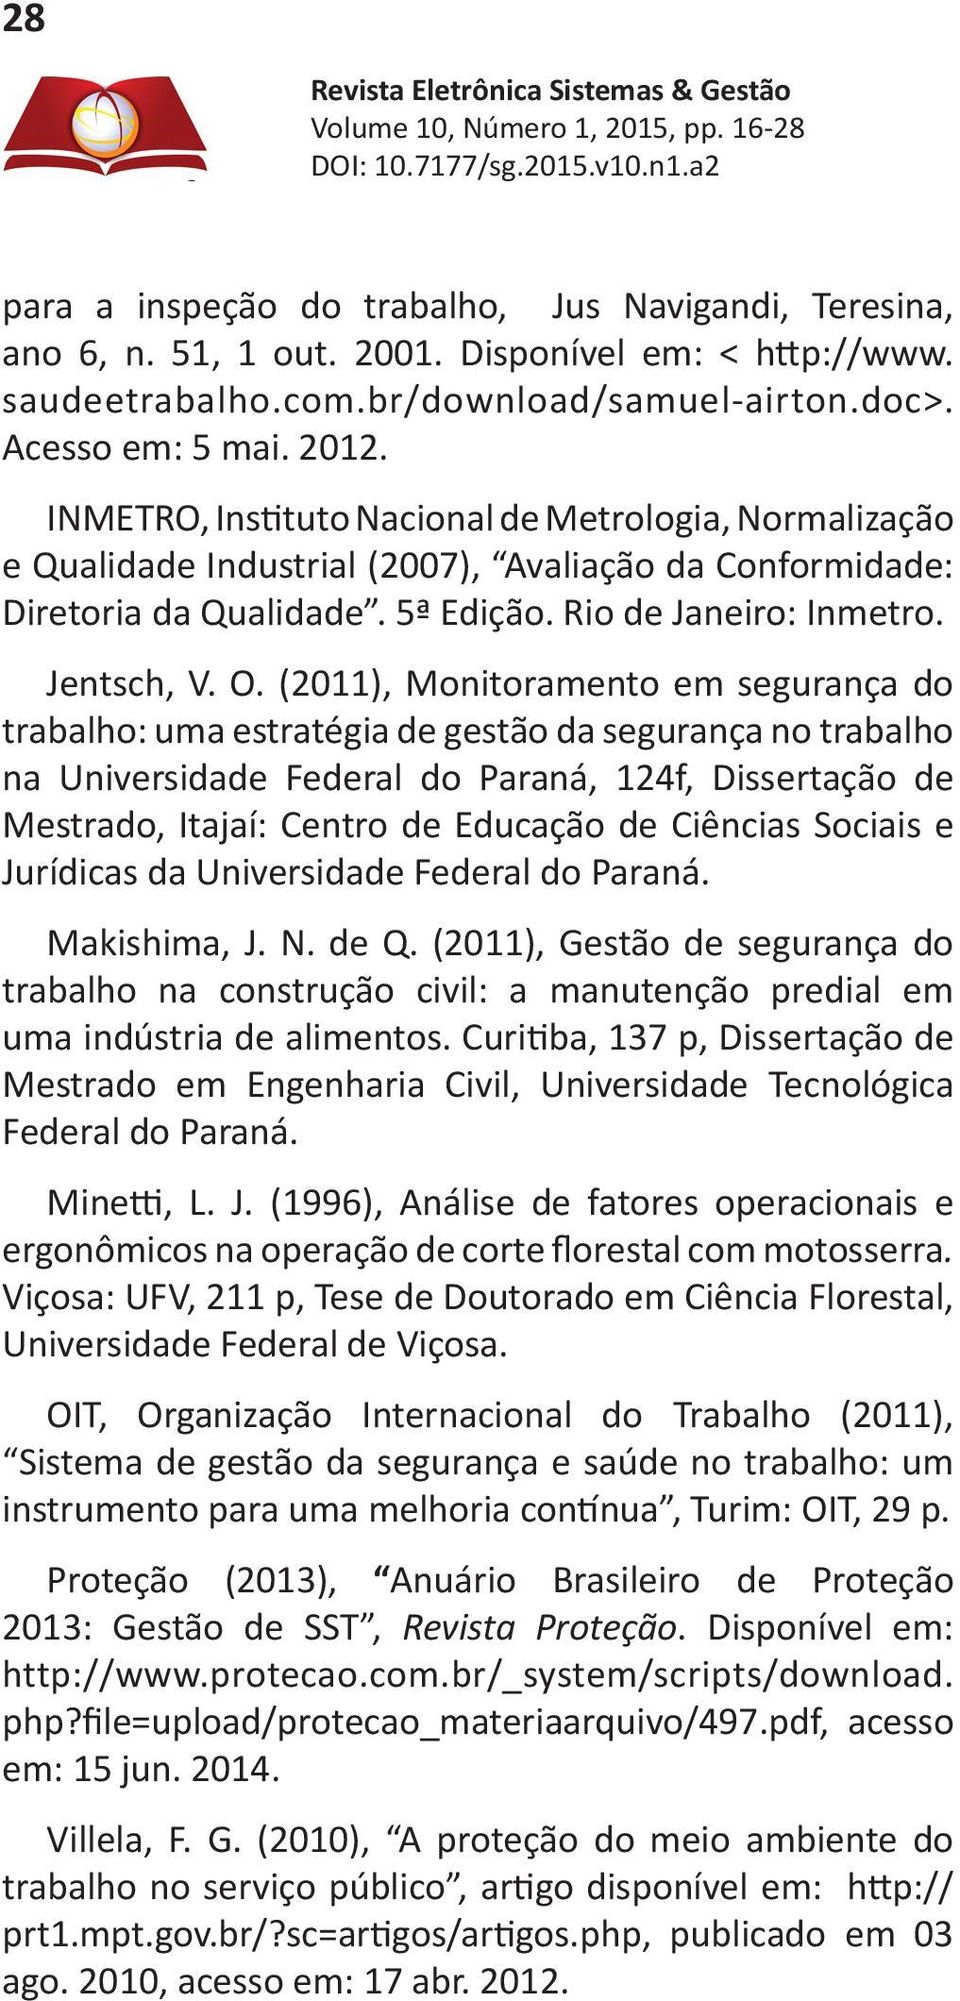 (2011), Monitoramento em segurança do trabalho: uma estratégia de gestão da segurança no trabalho na Universidade Federal do Paraná, 124f, Dissertação de Mestrado, Itajaí: Centro de Educação de